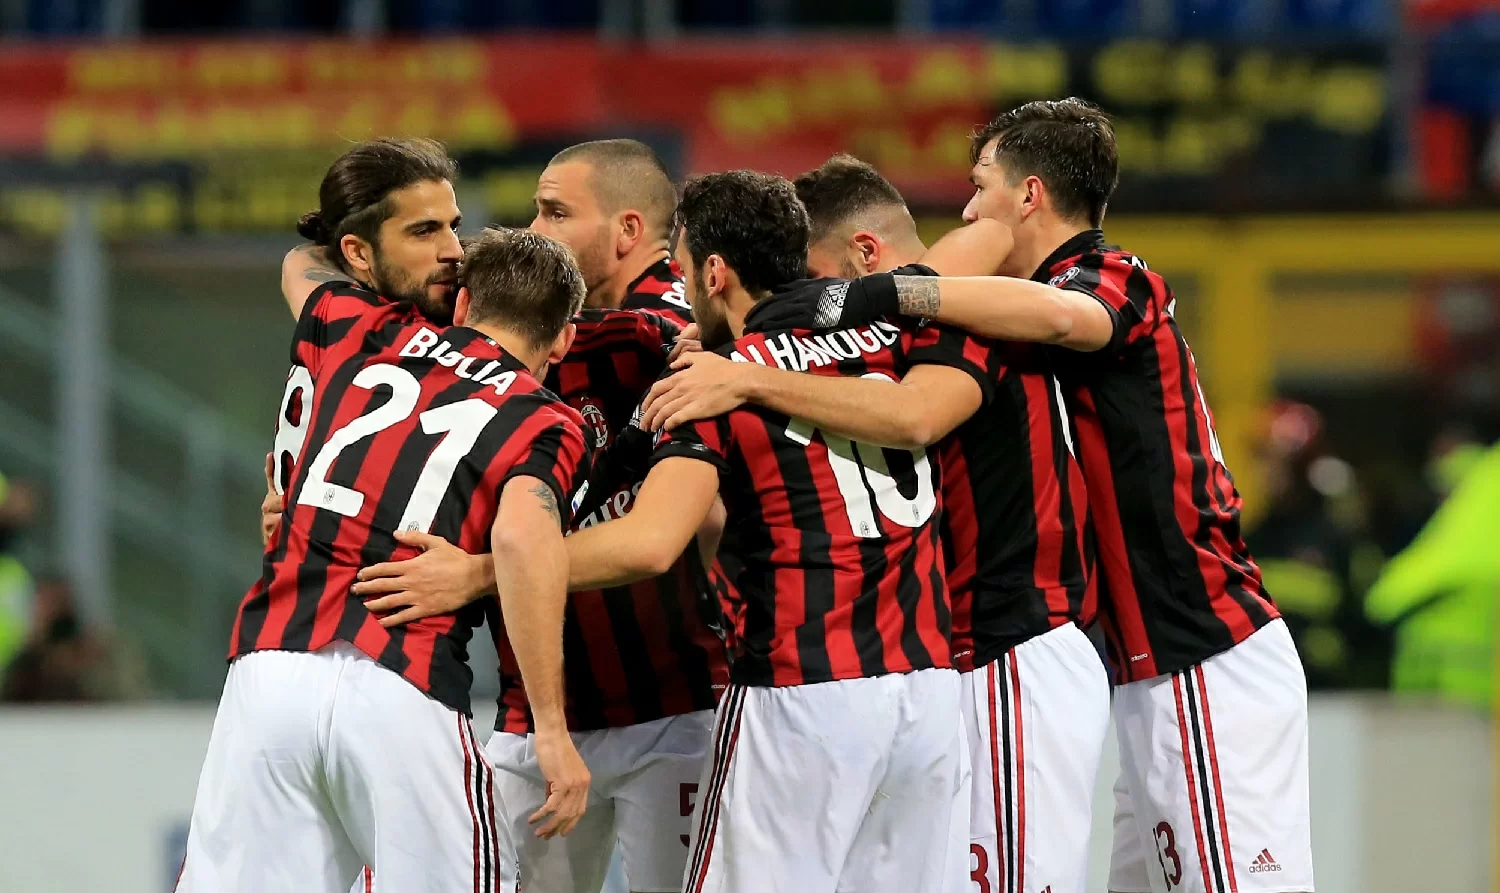 Serie A, Milan a quota 41 punti dopo i primi 25 turni: lo scorso anno i punti erano 44